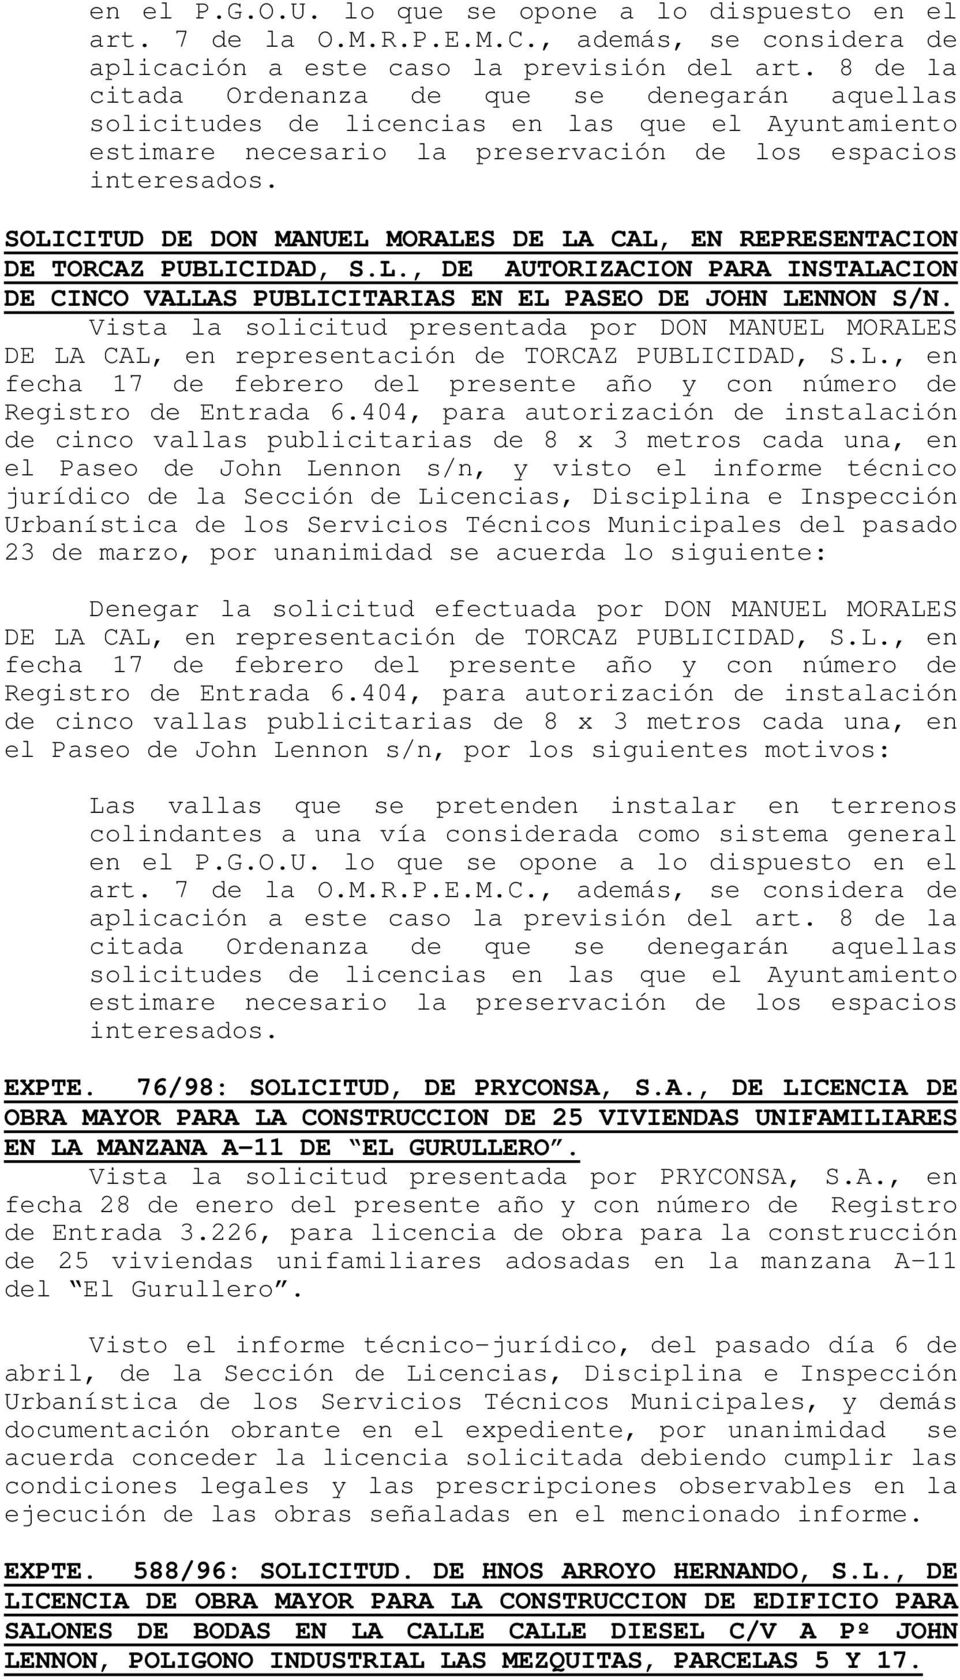 SOLICITUD DE DON MANUEL MORALES DE LA CAL, EN REPRESENTACION DE TORCAZ PUBLICIDAD, S.L., DE AUTORIZACION PARA INSTALACION DE CINCO VALLAS PUBLICITARIAS EN EL PASEO DE JOHN LENNON S/N.